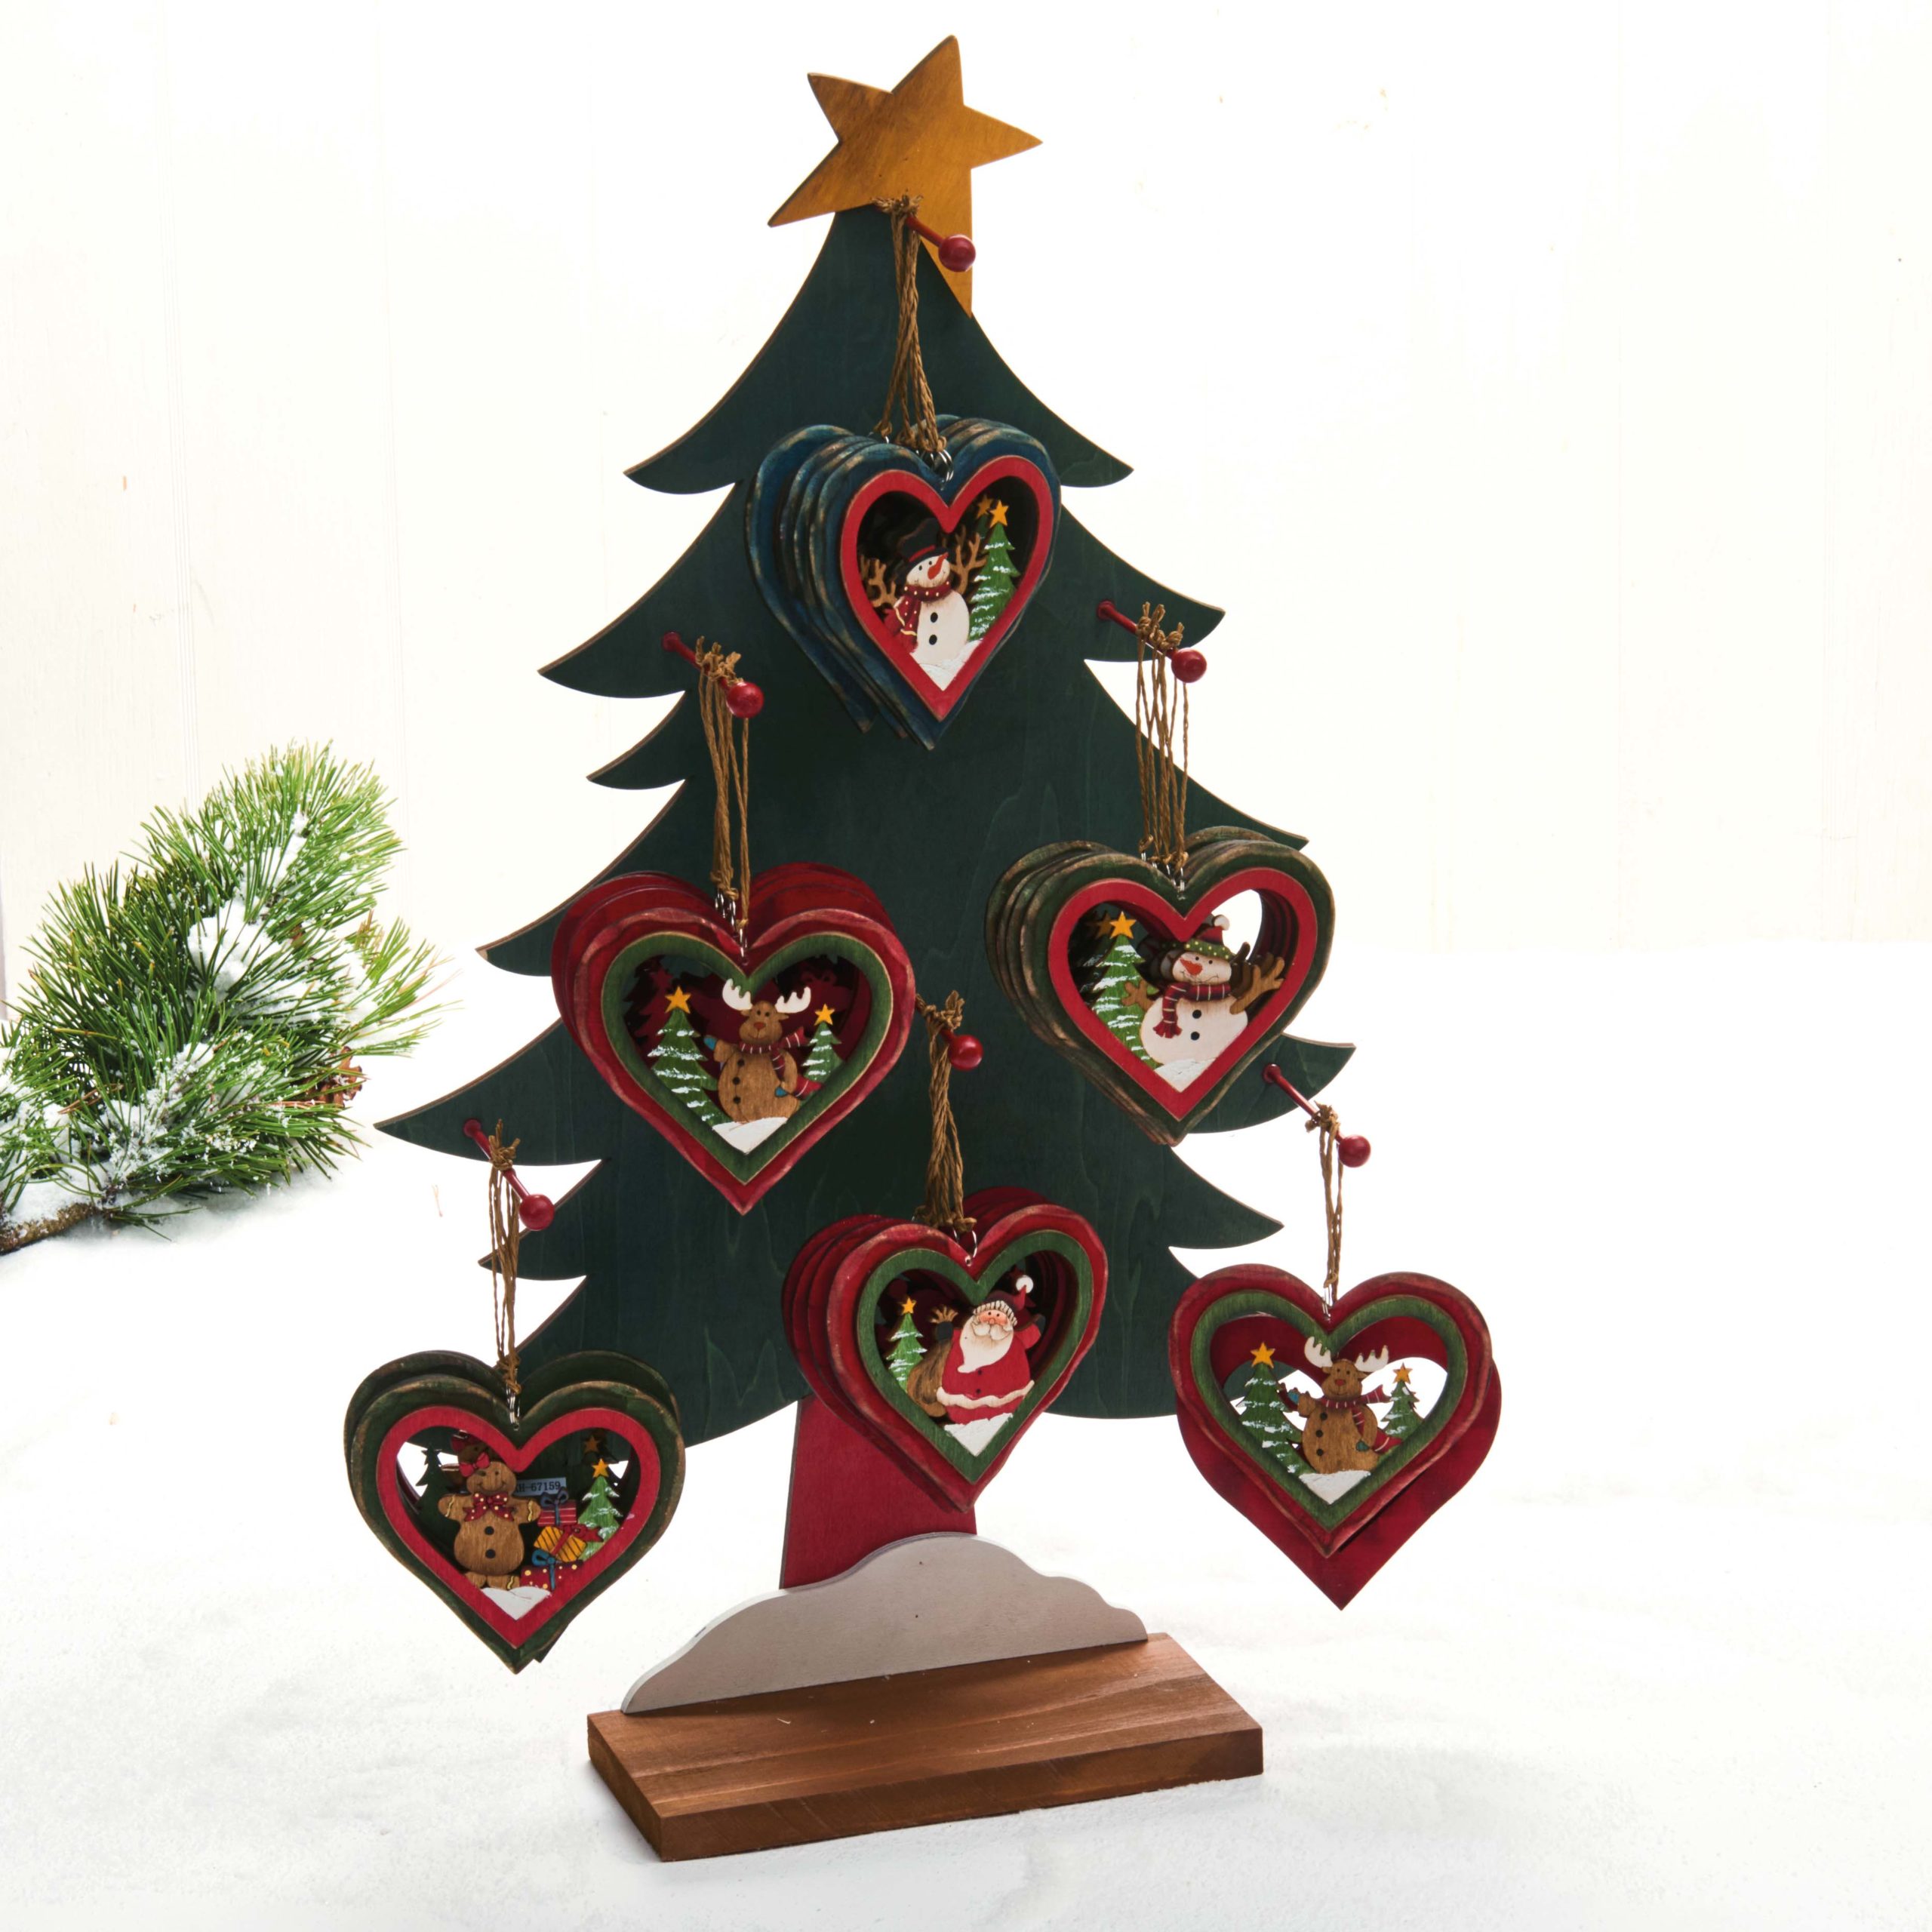 Hjertetræfigur til juletræet – Snemand med sort hat